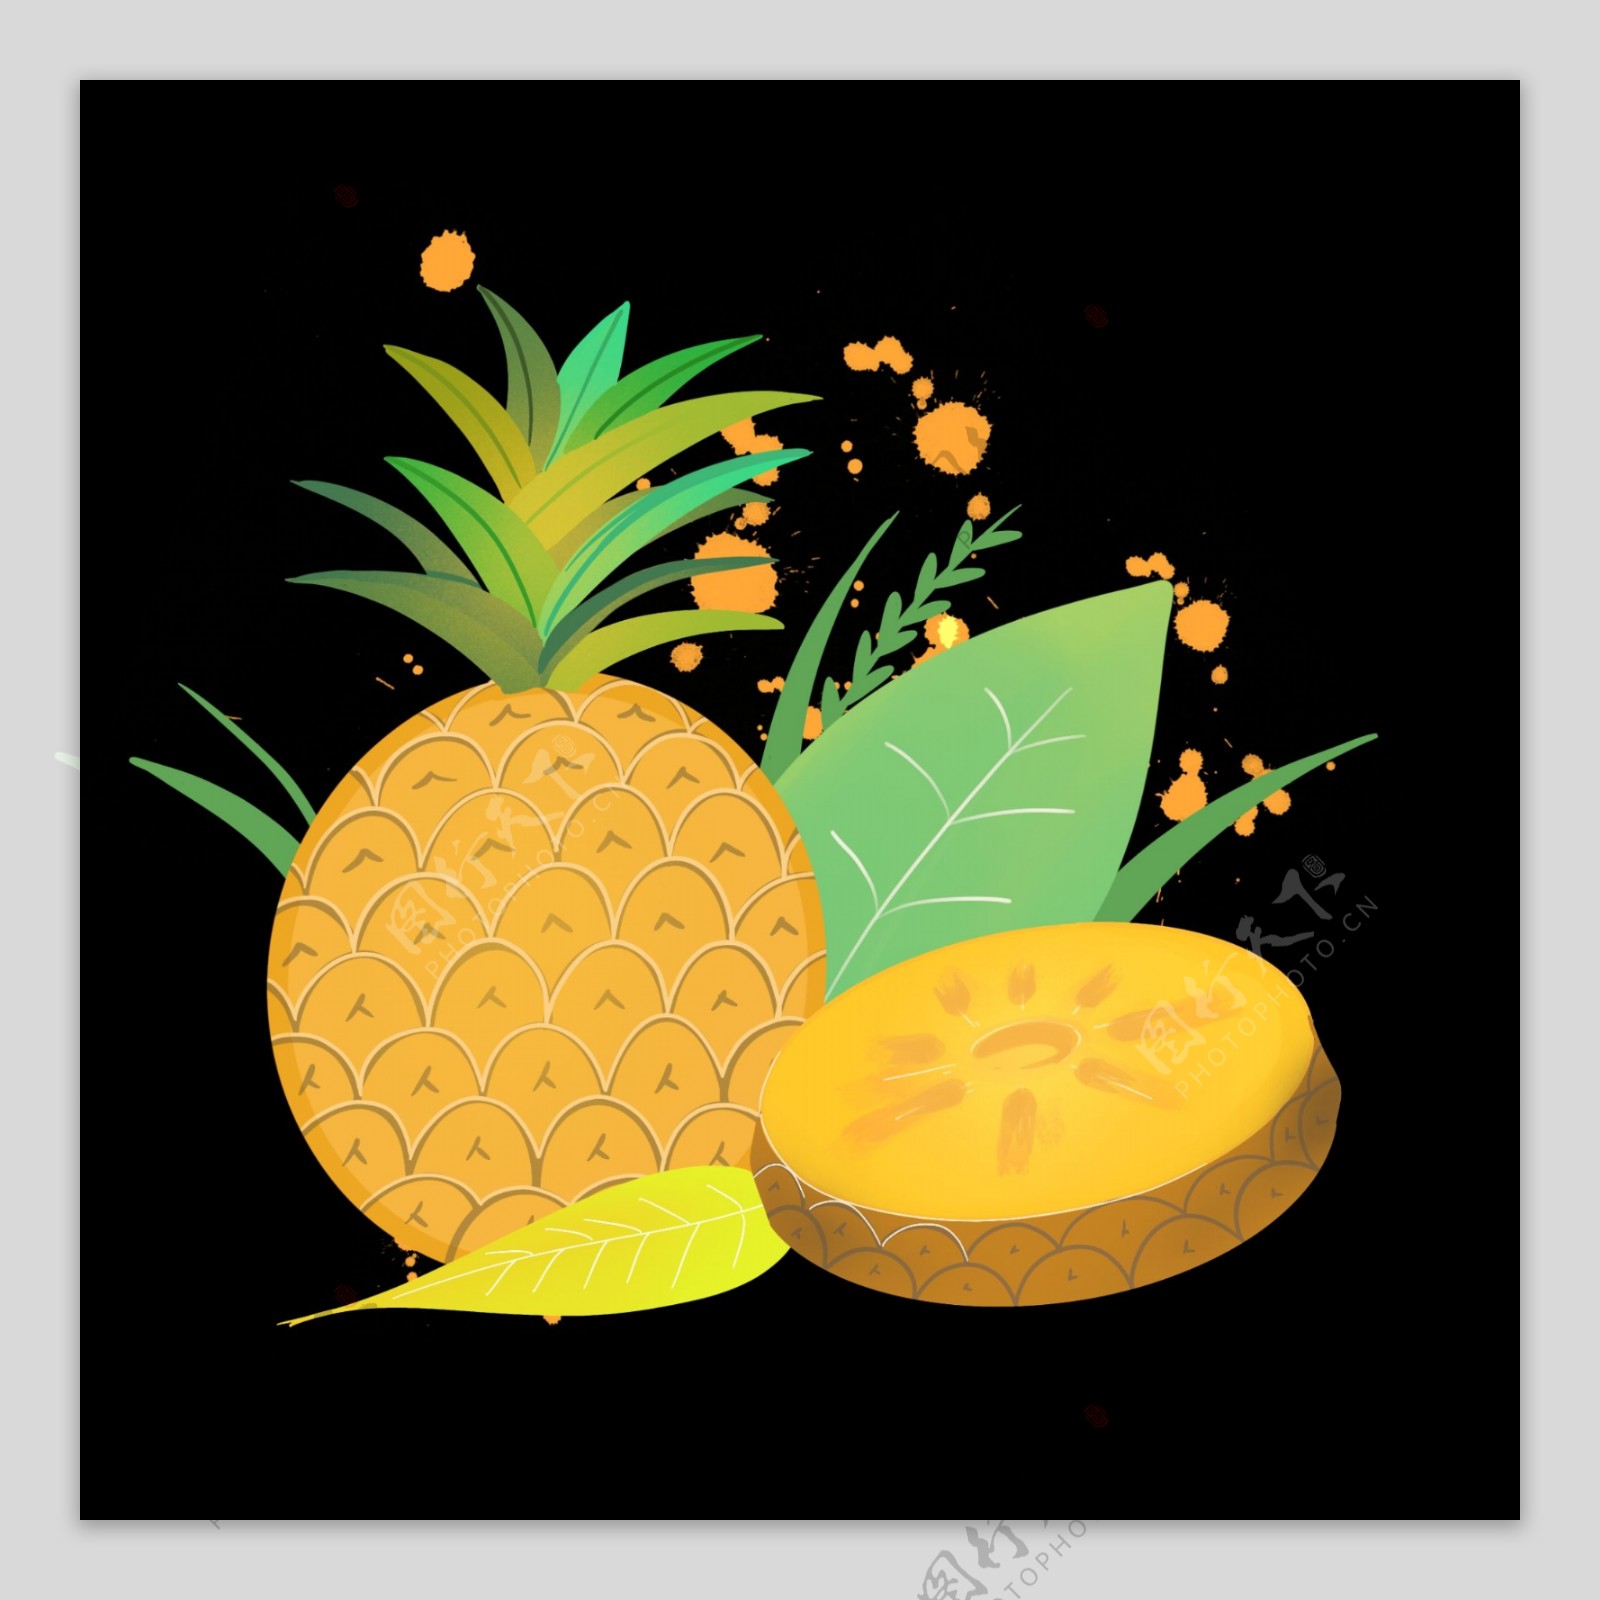 菠萝凤梨黄金甜蜜热带水果PNG